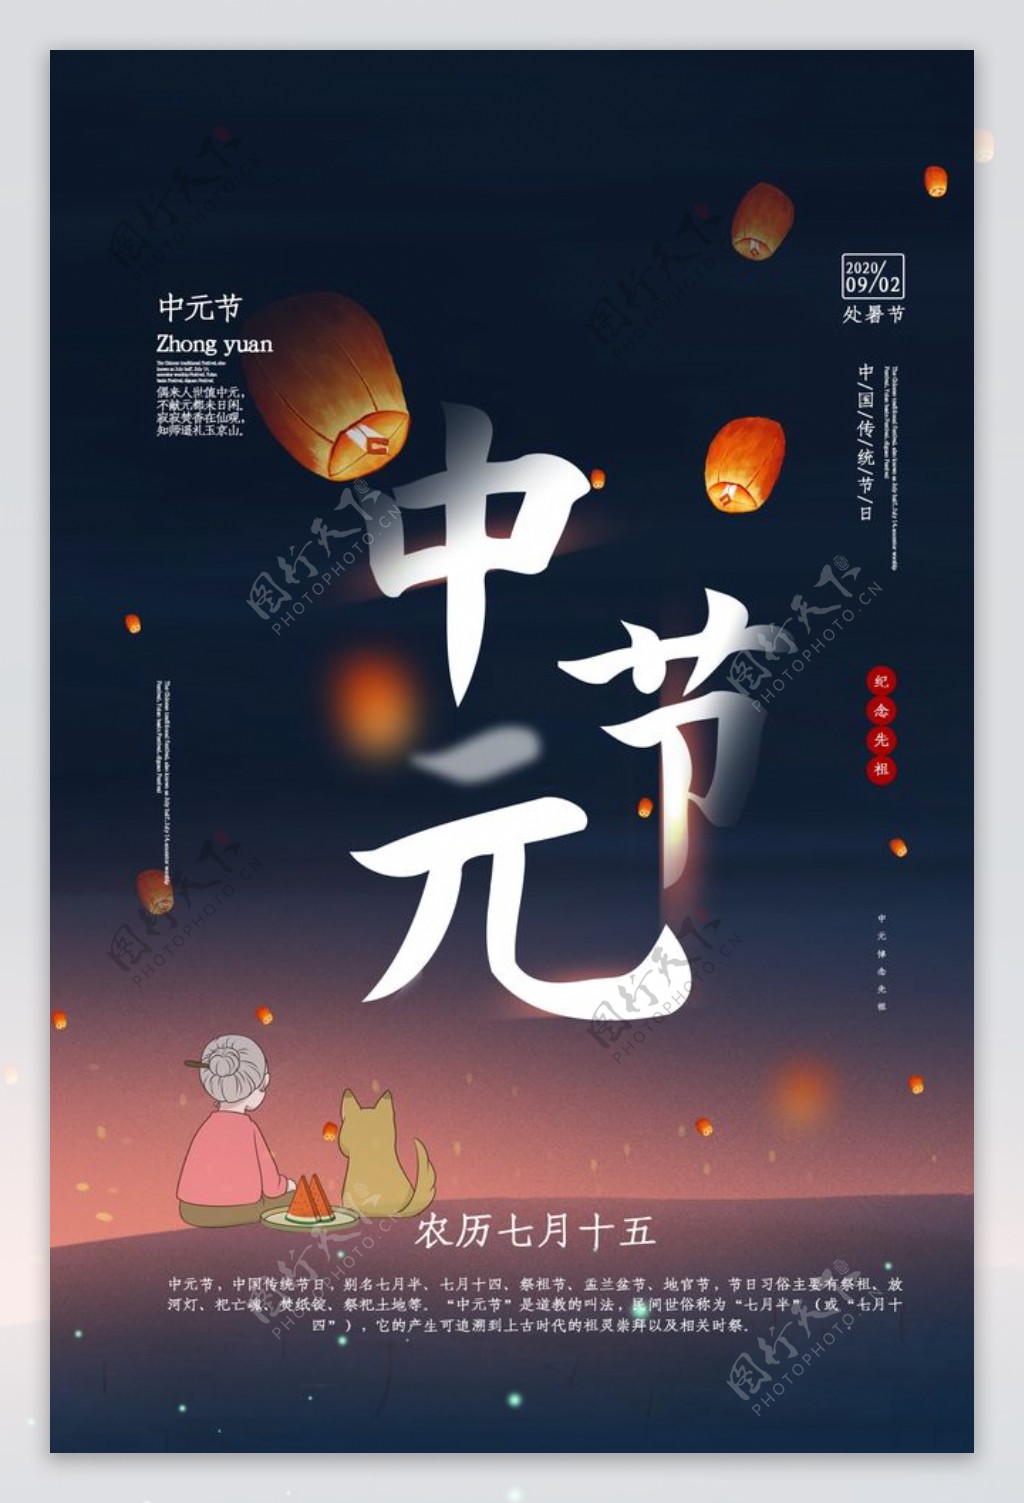 中元节传统节日活动促销宣传海报